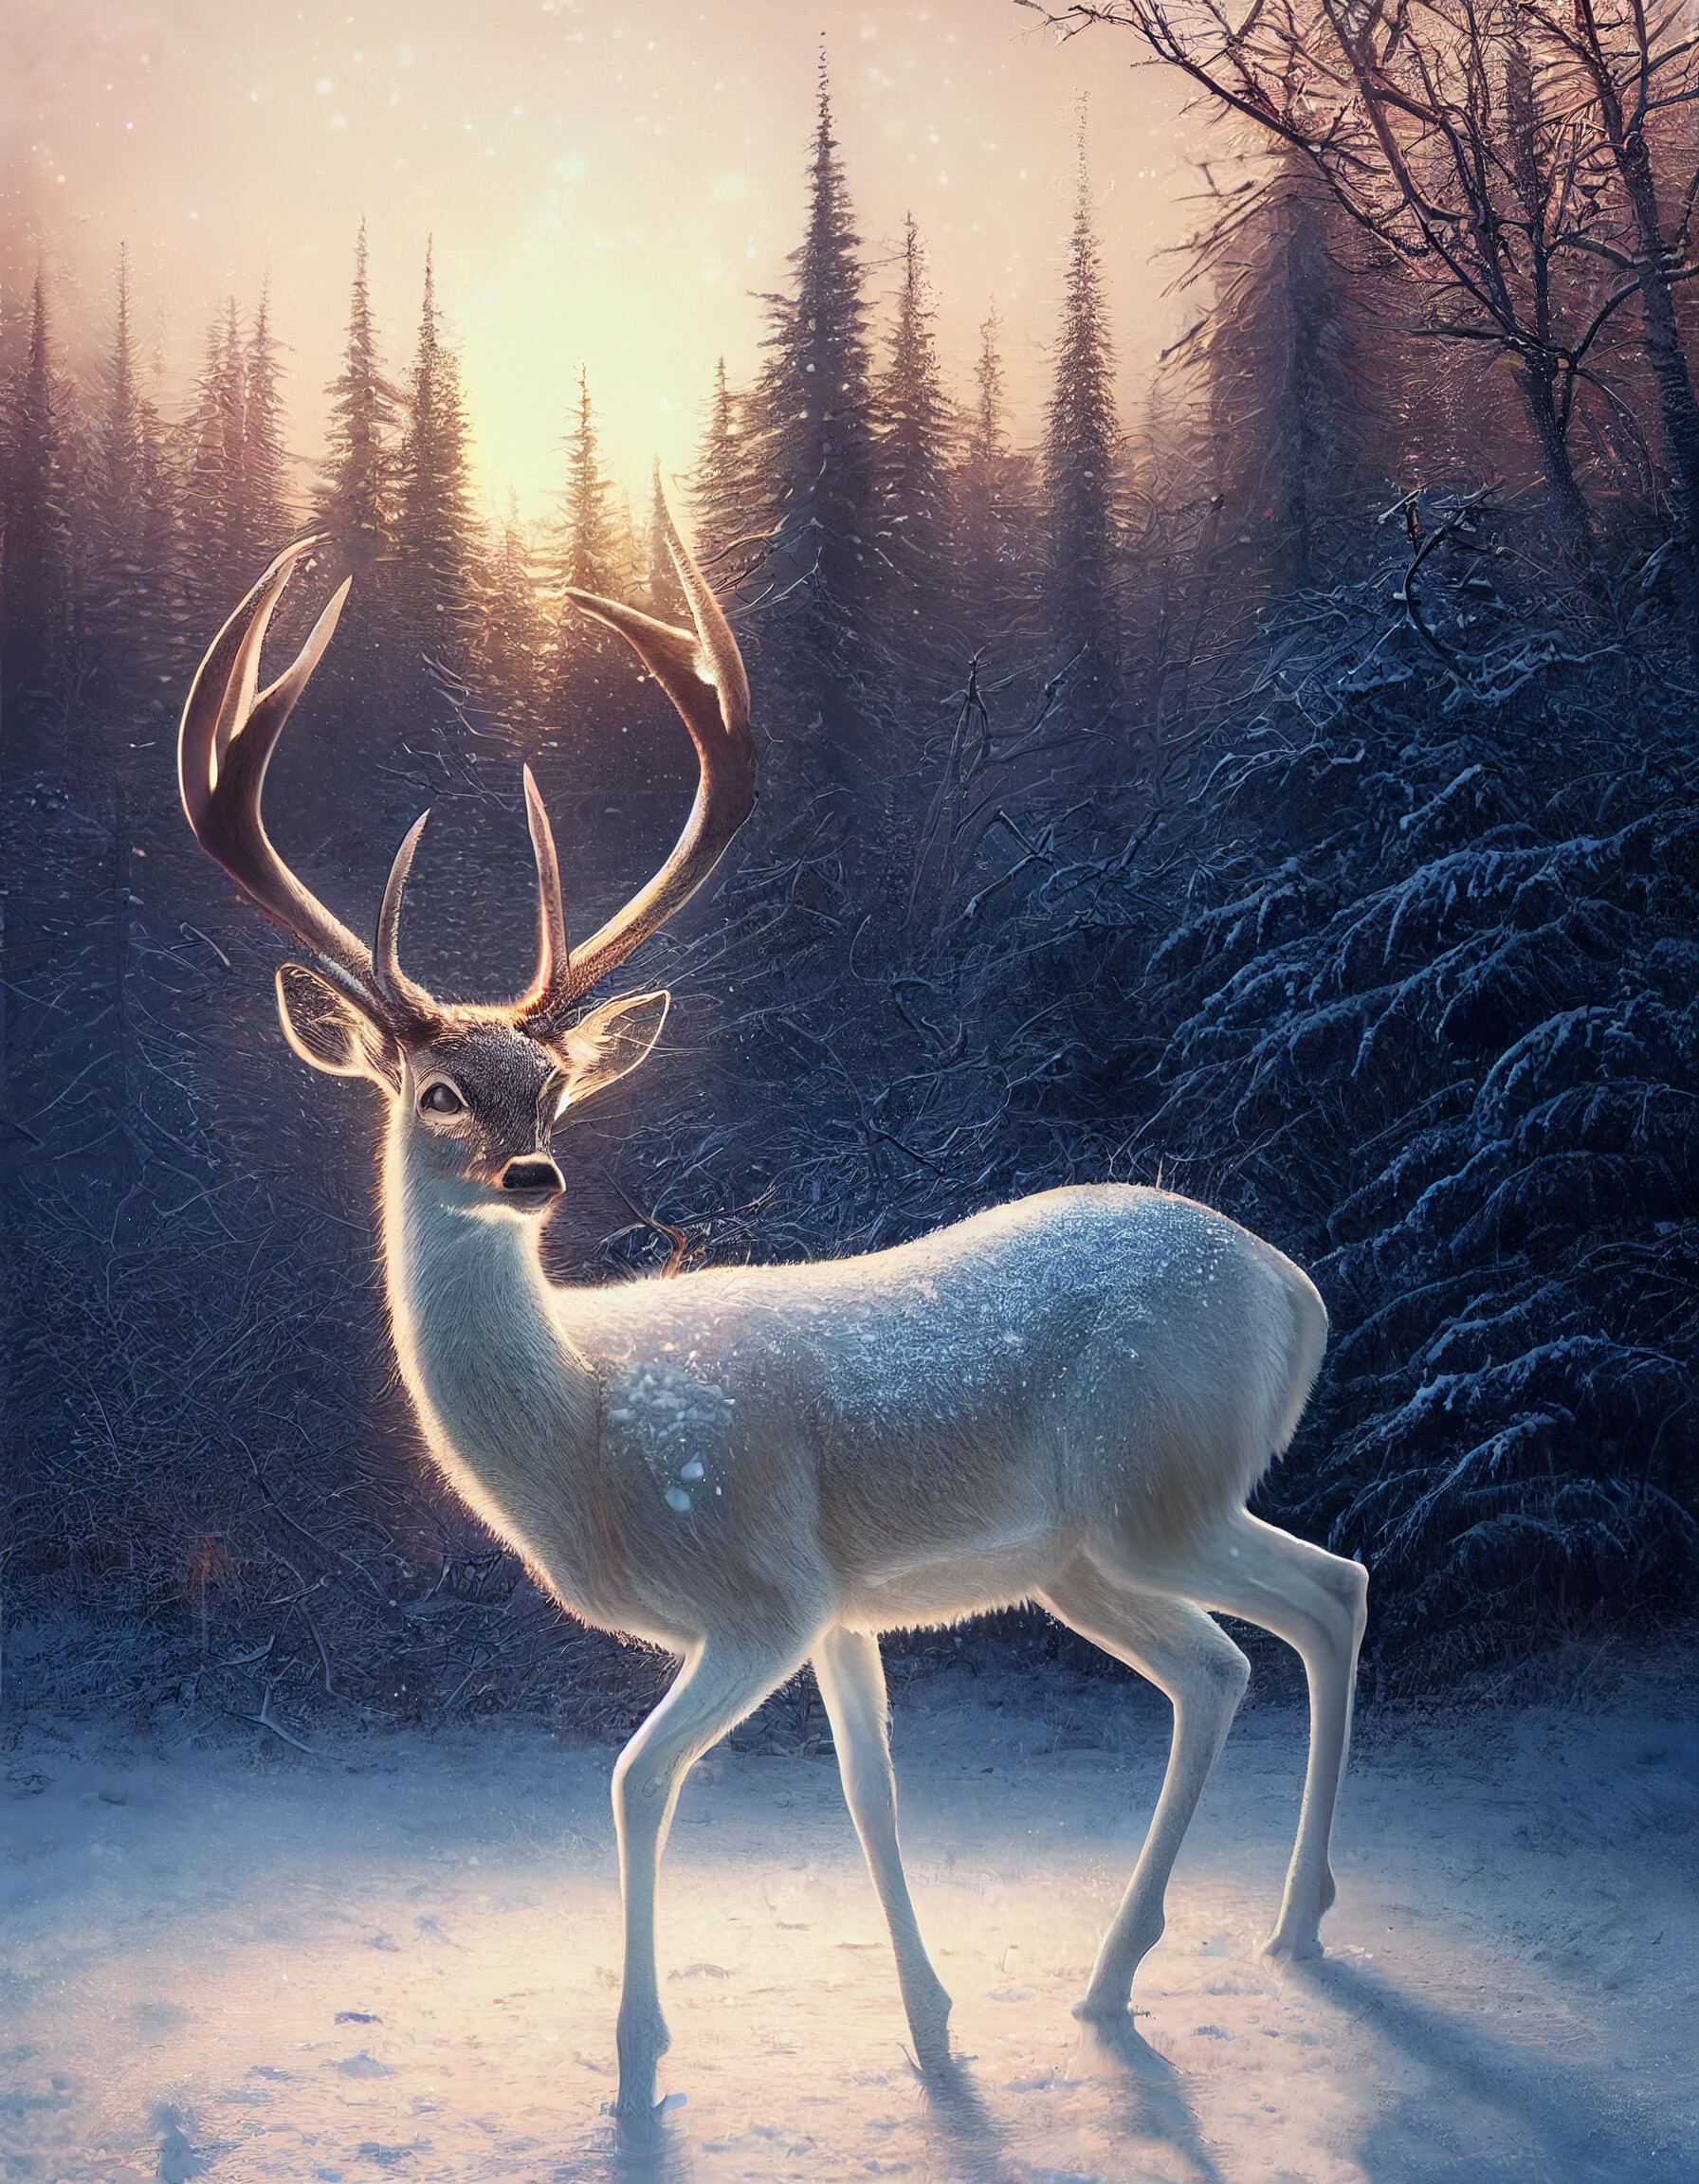 ArtStation - A deer in the snow.